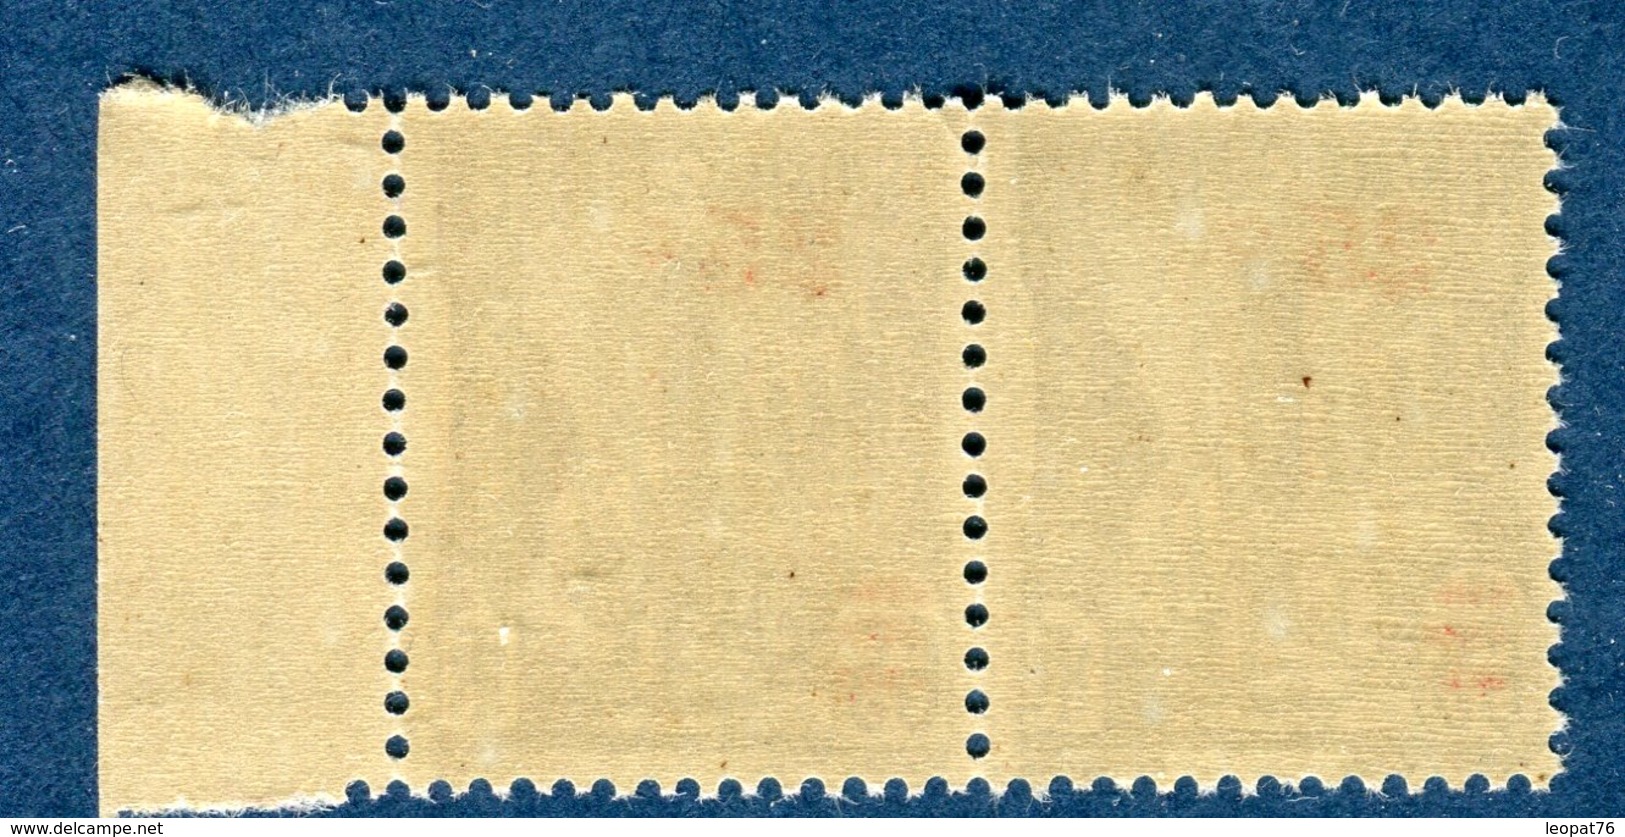 France / Tunisie - Variété N°Yvert 205 - Surcahrge Très épaisse Tenant à Normal - Neufs **  Réf. D 139 - Unused Stamps